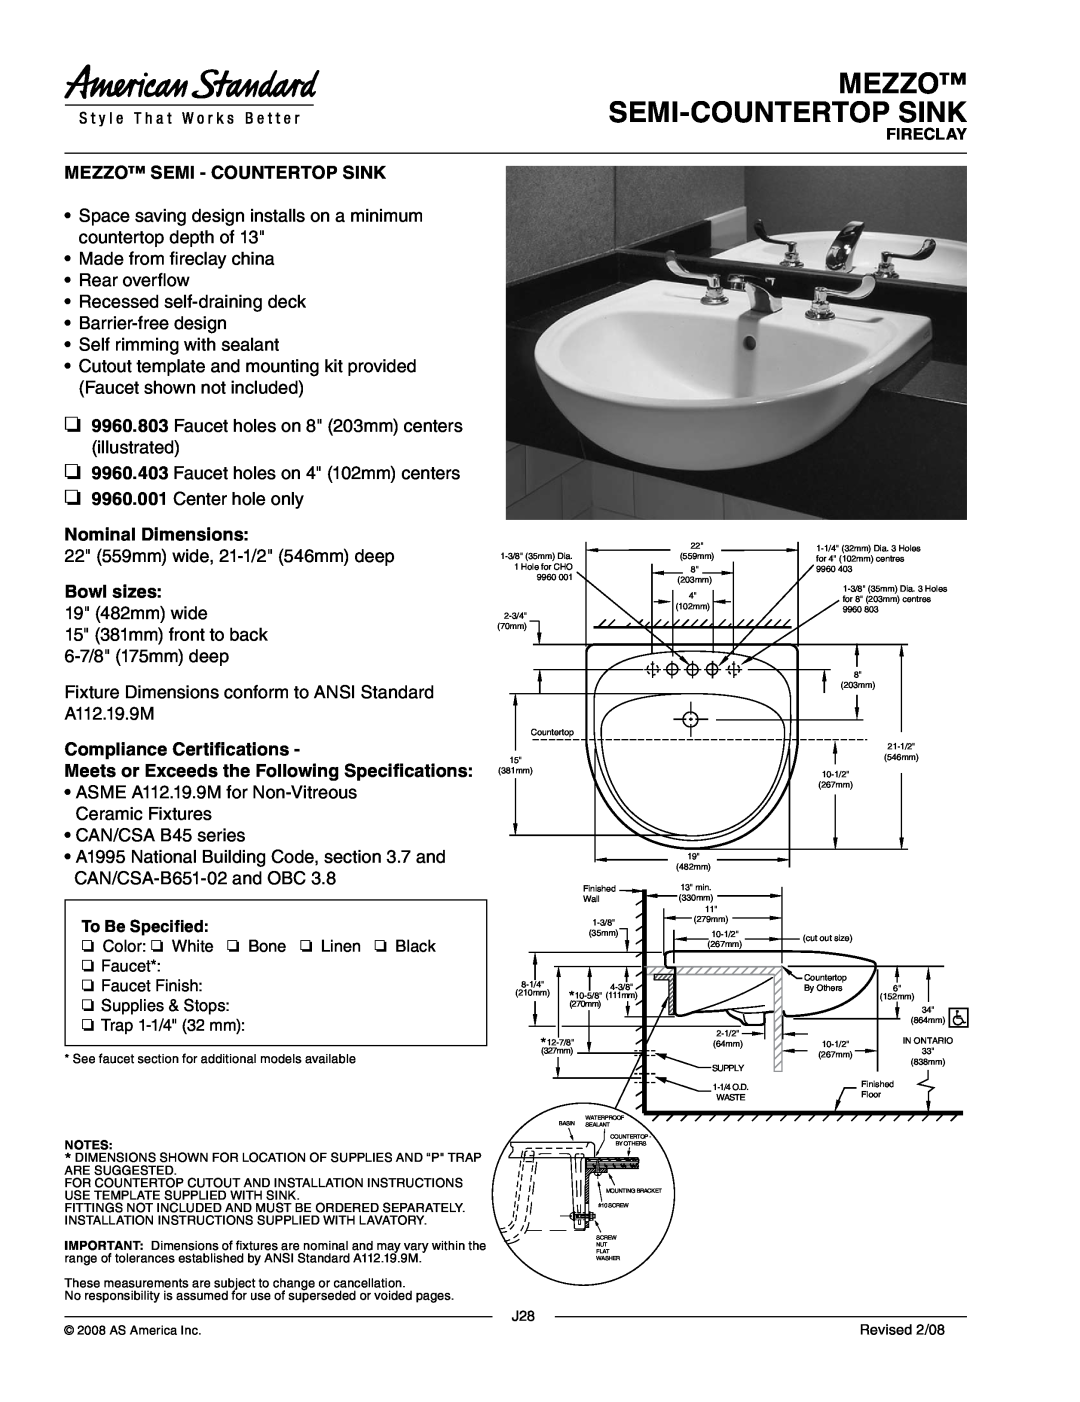 American Standard 9960.803 dimensions Mezzo Semi-Countertopsink, Mezzo Semi - Countertop Sink, Nominal Dimensions 